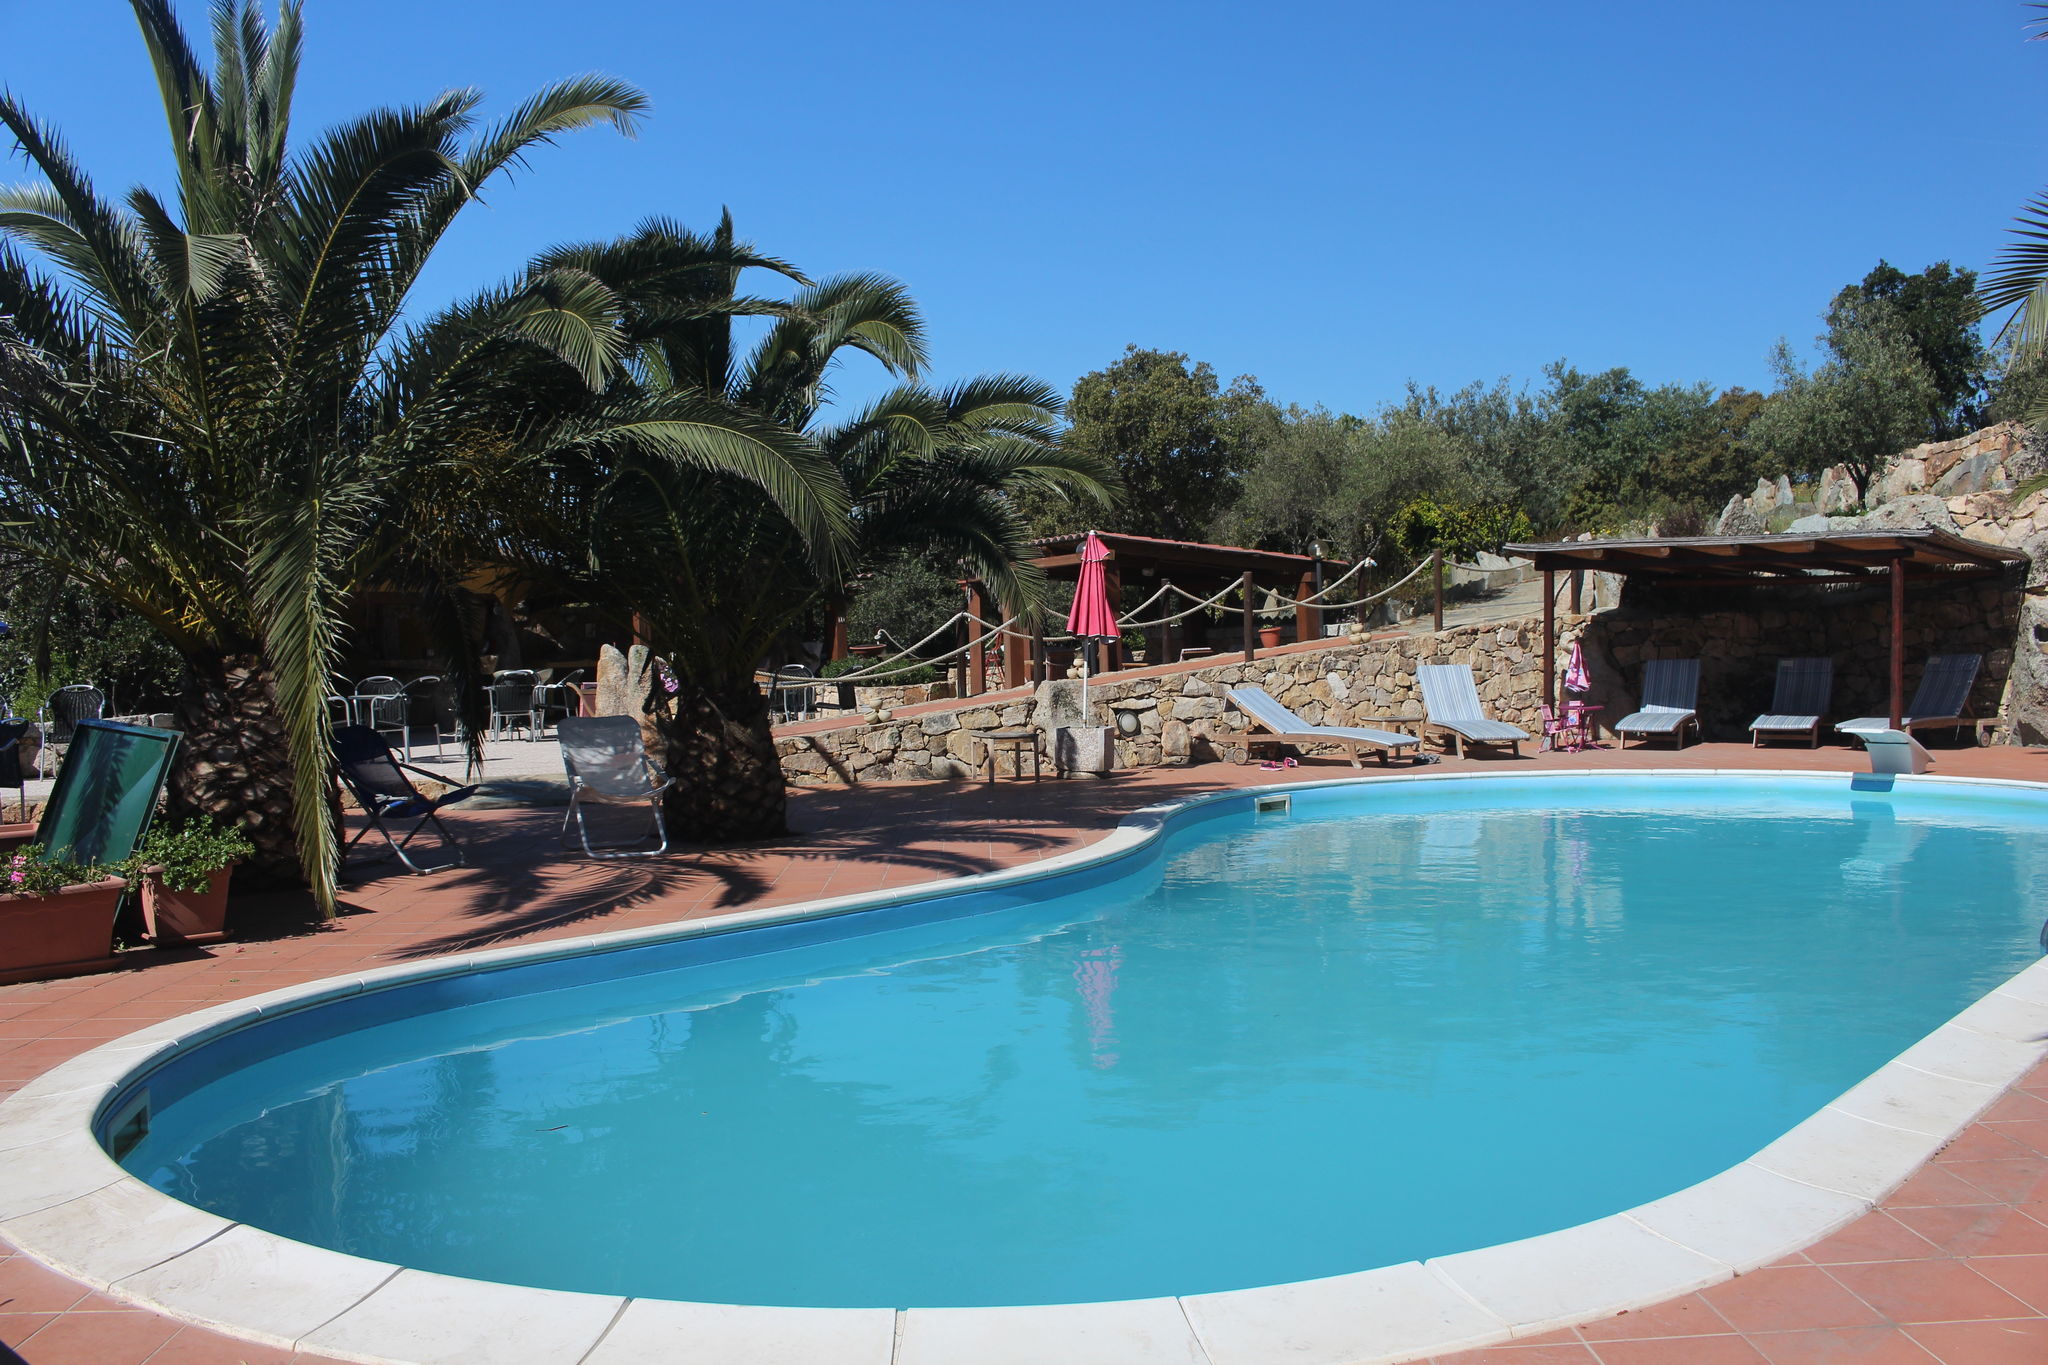 Huis met zwembad op 3 hectare mediterrane vegetatie, wijngaarden en boomgaarden